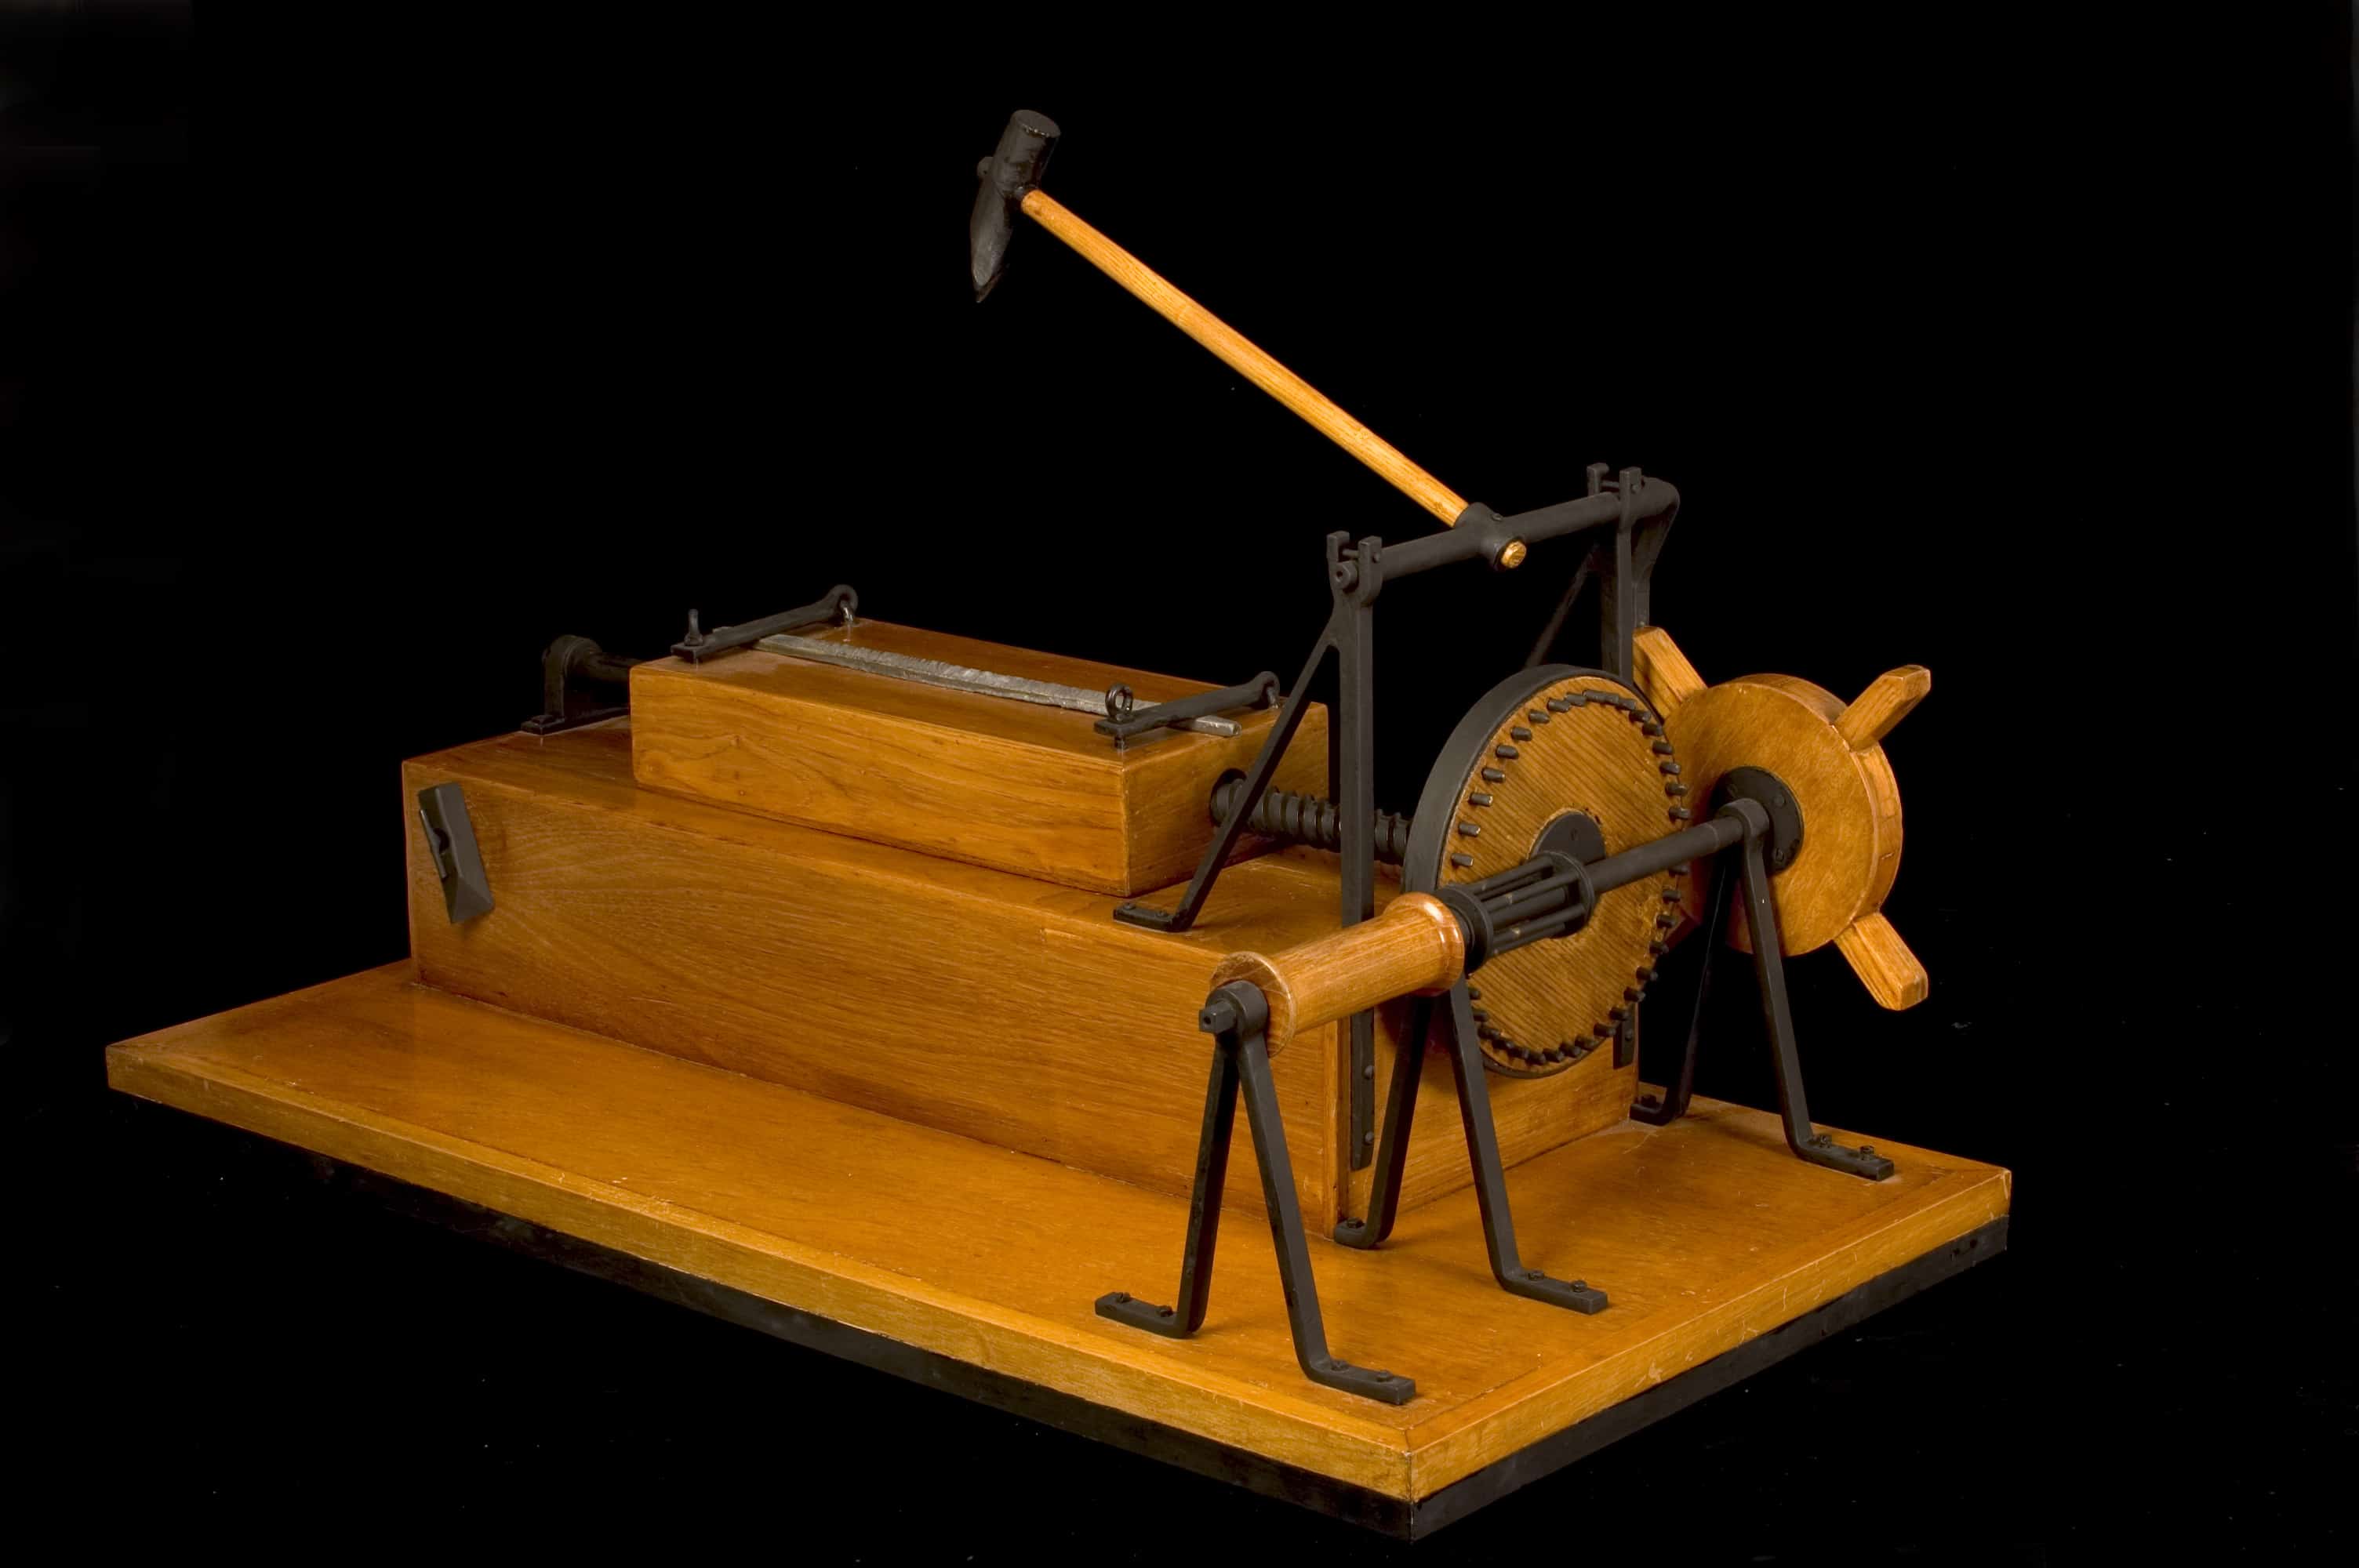 Leonardo's file-cutting machine tool © Archivio Museo Nazionale della Scienza e della Tecnologia Leonardo da Vinci – Alessandro Nassiri 